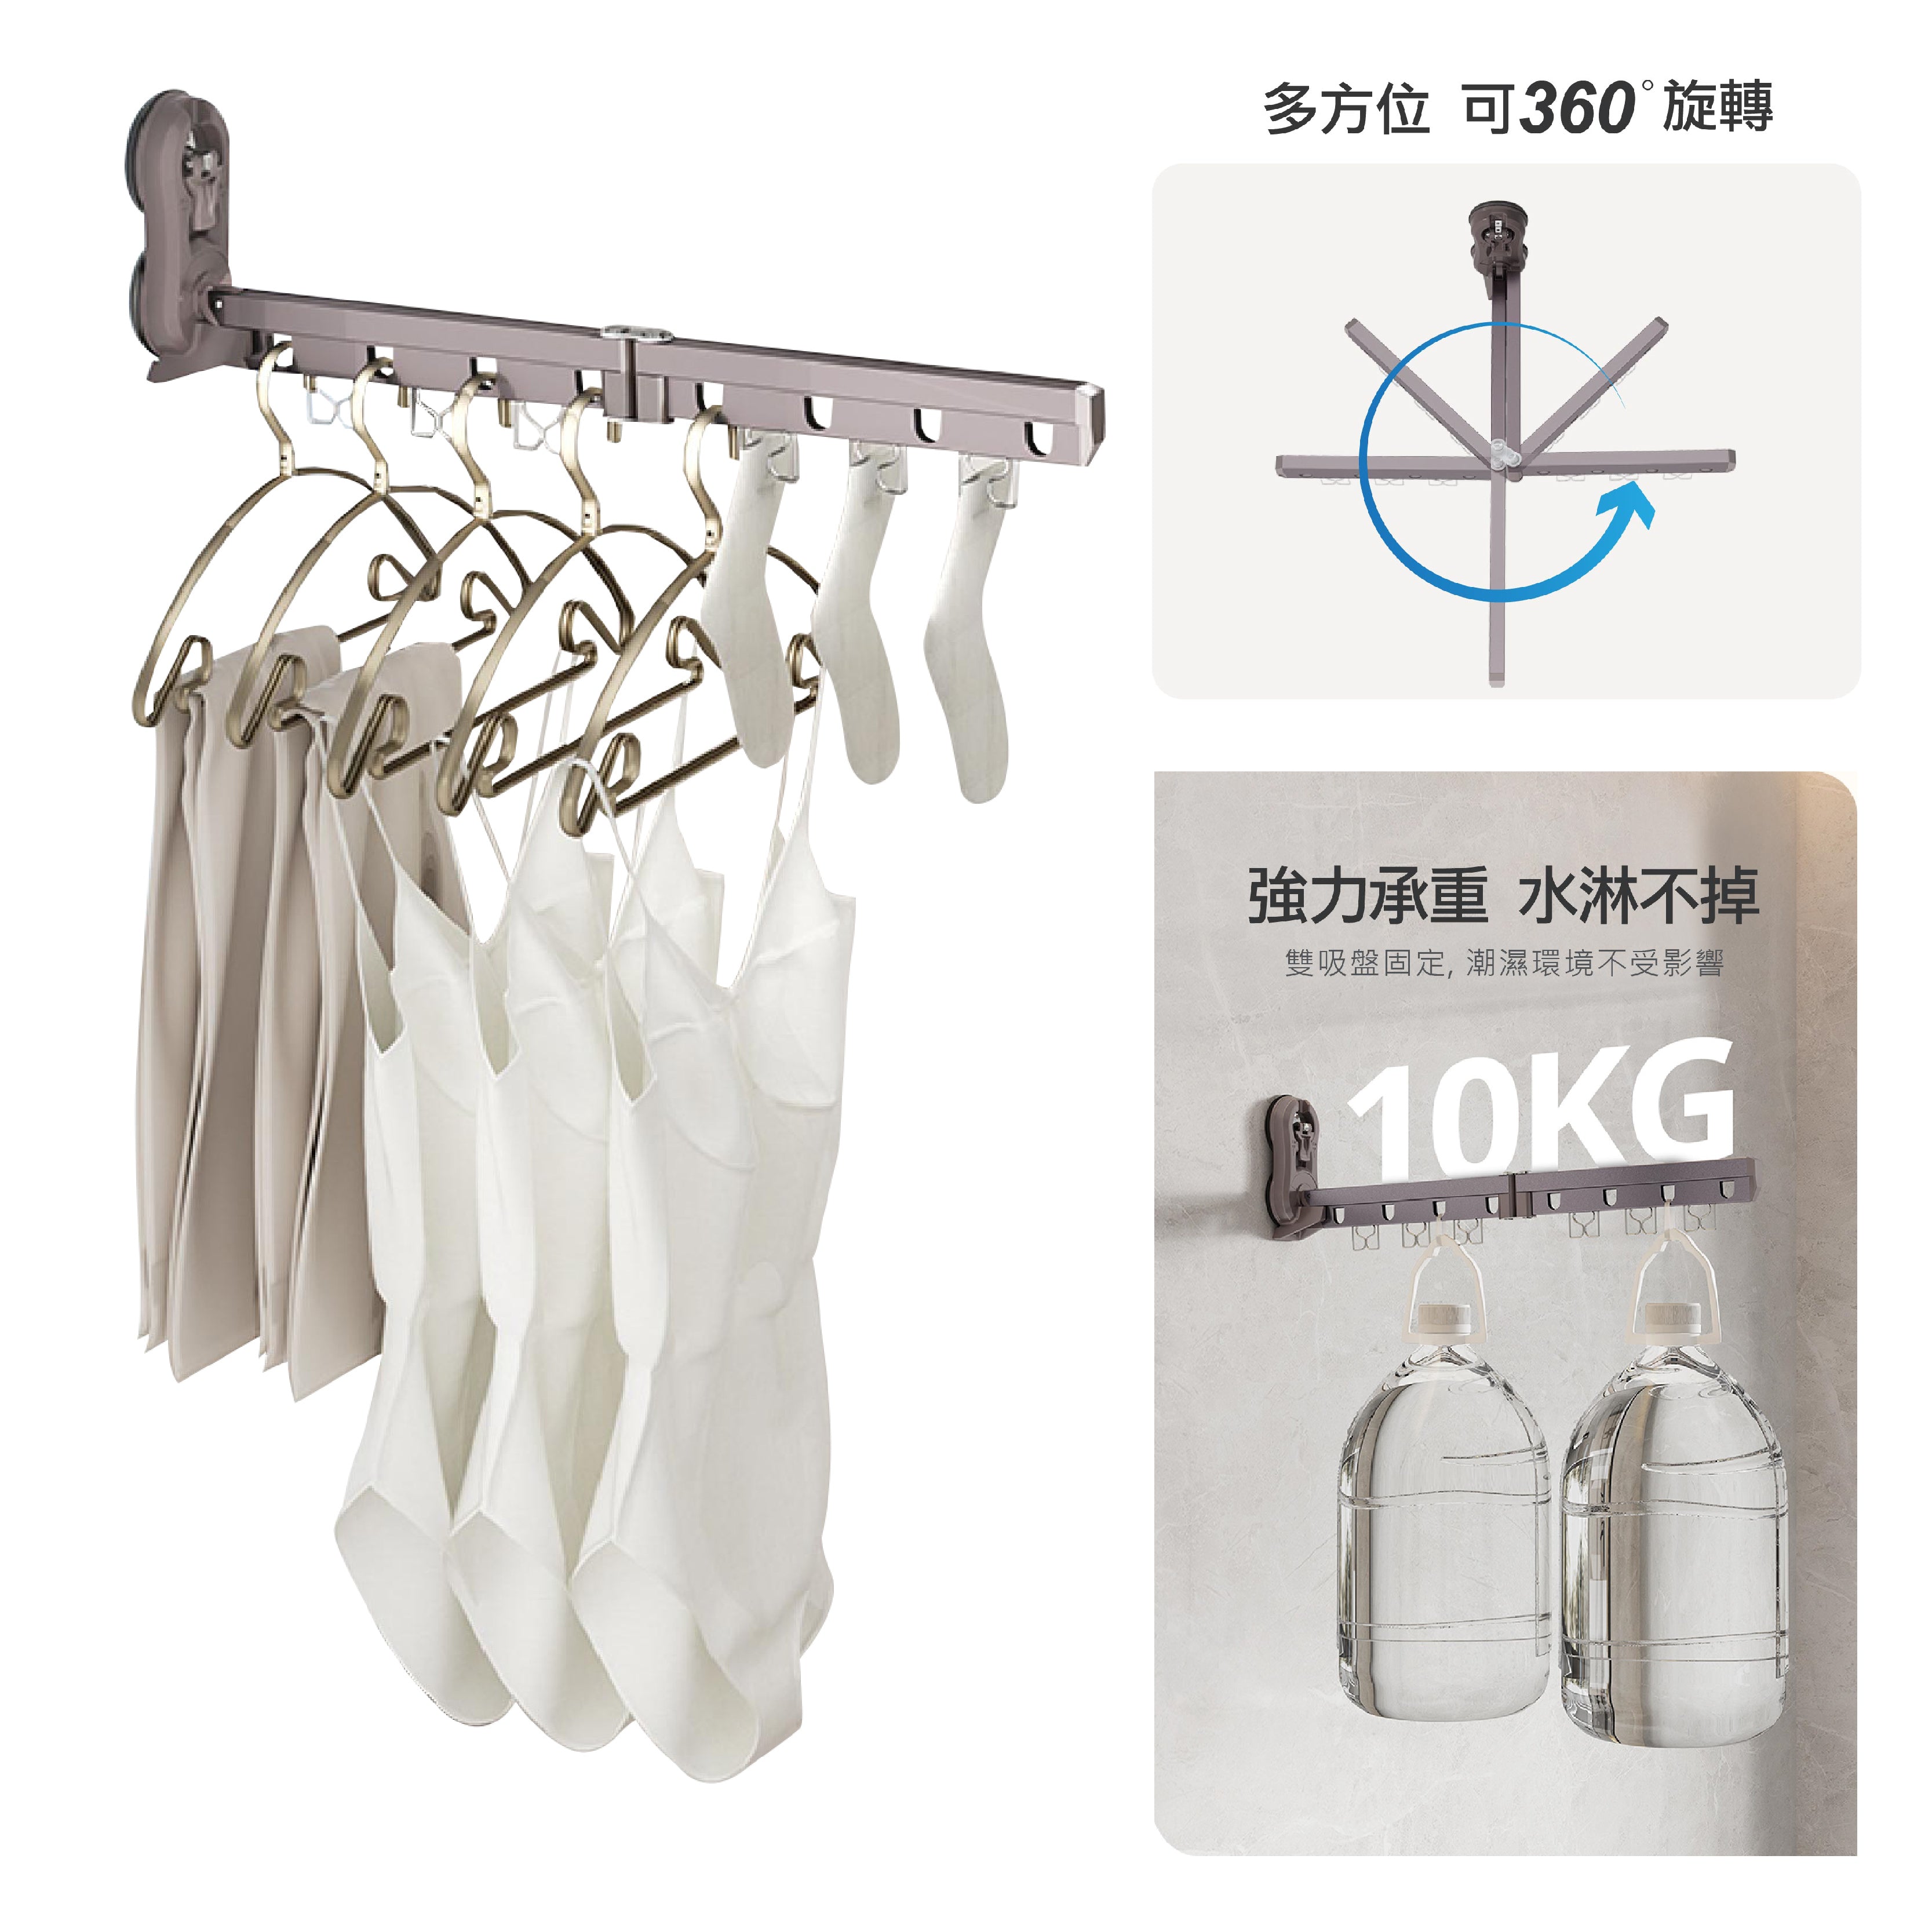 Portable Clothes Drying Rack 便携吸盤晾衫架